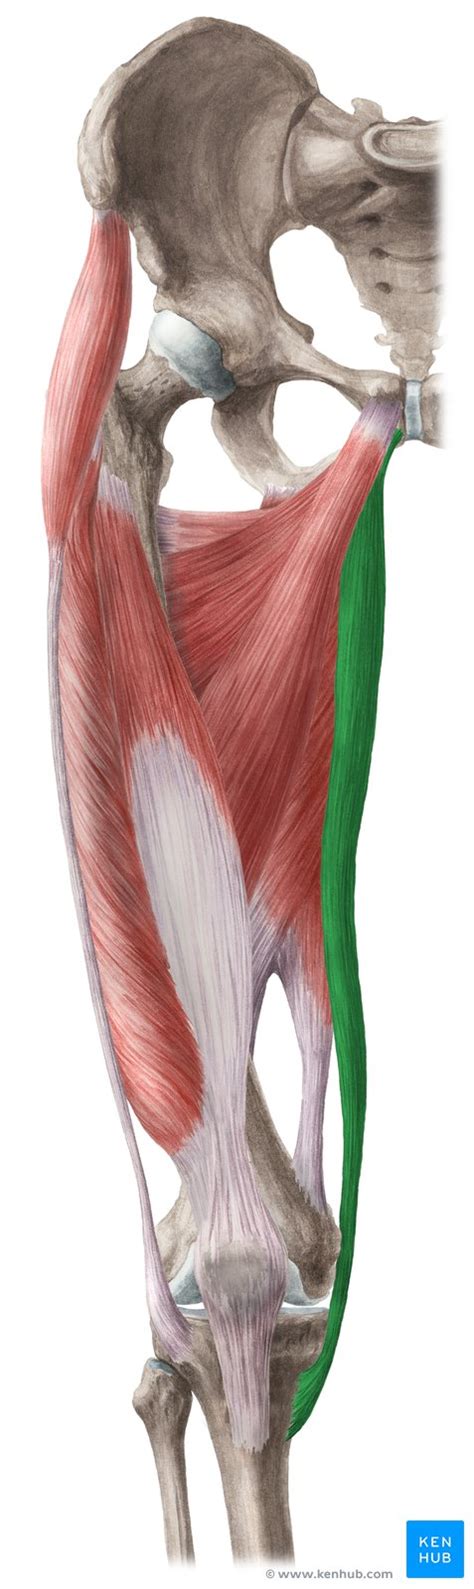 Musculus Gracilis Anatomie Funktion Klinik Kenhub